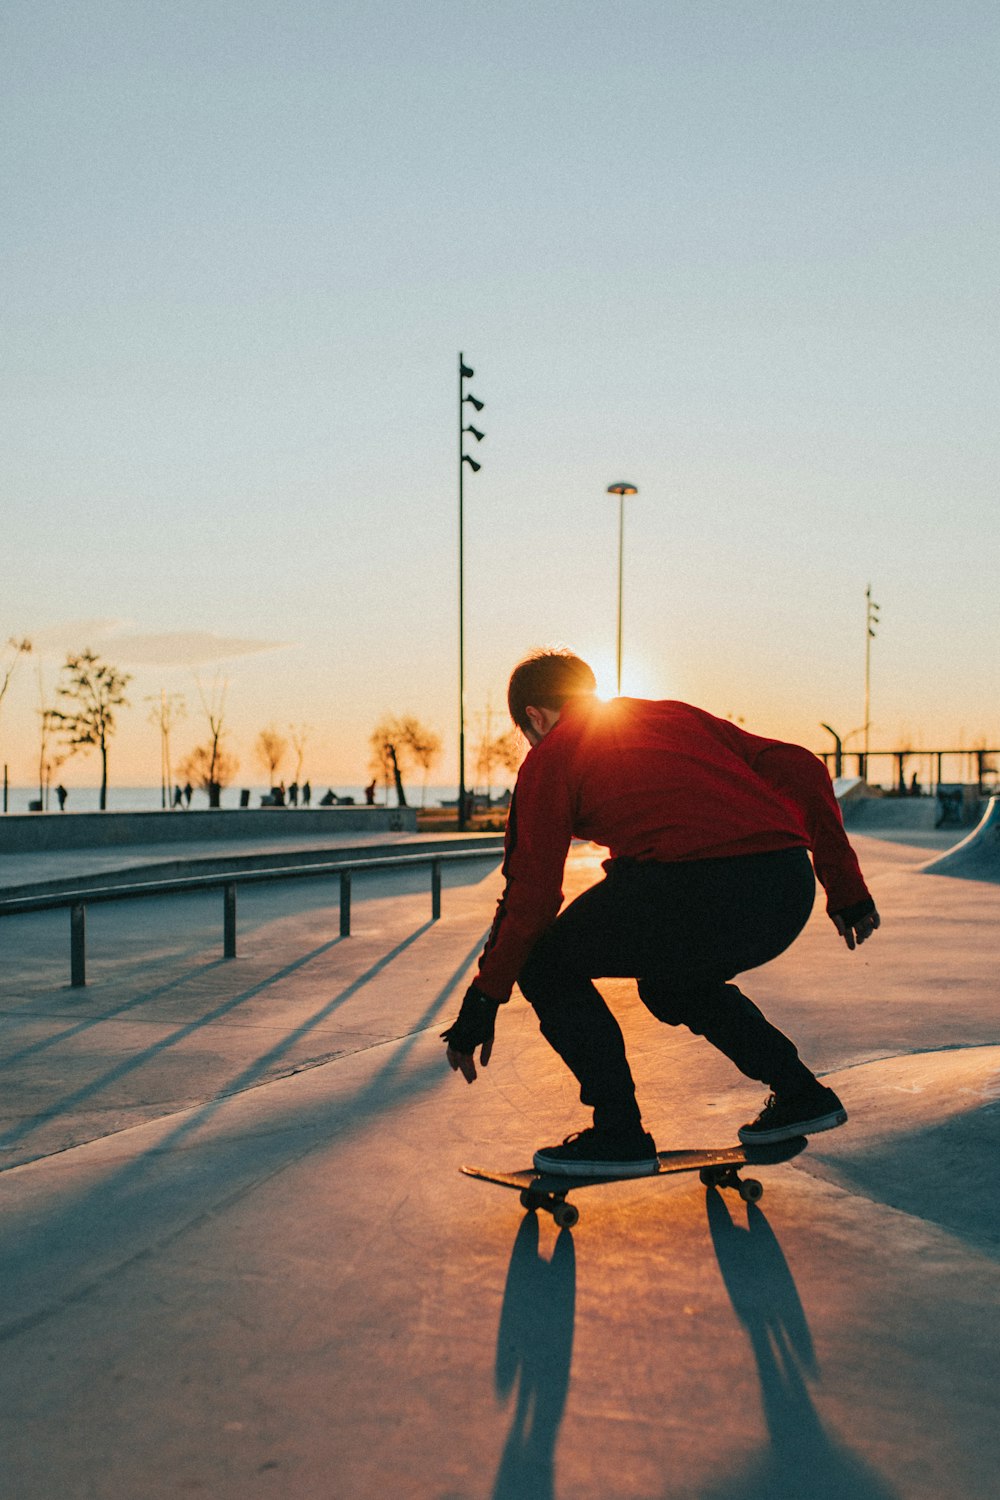 man in red shirt riding skateboard during daytime